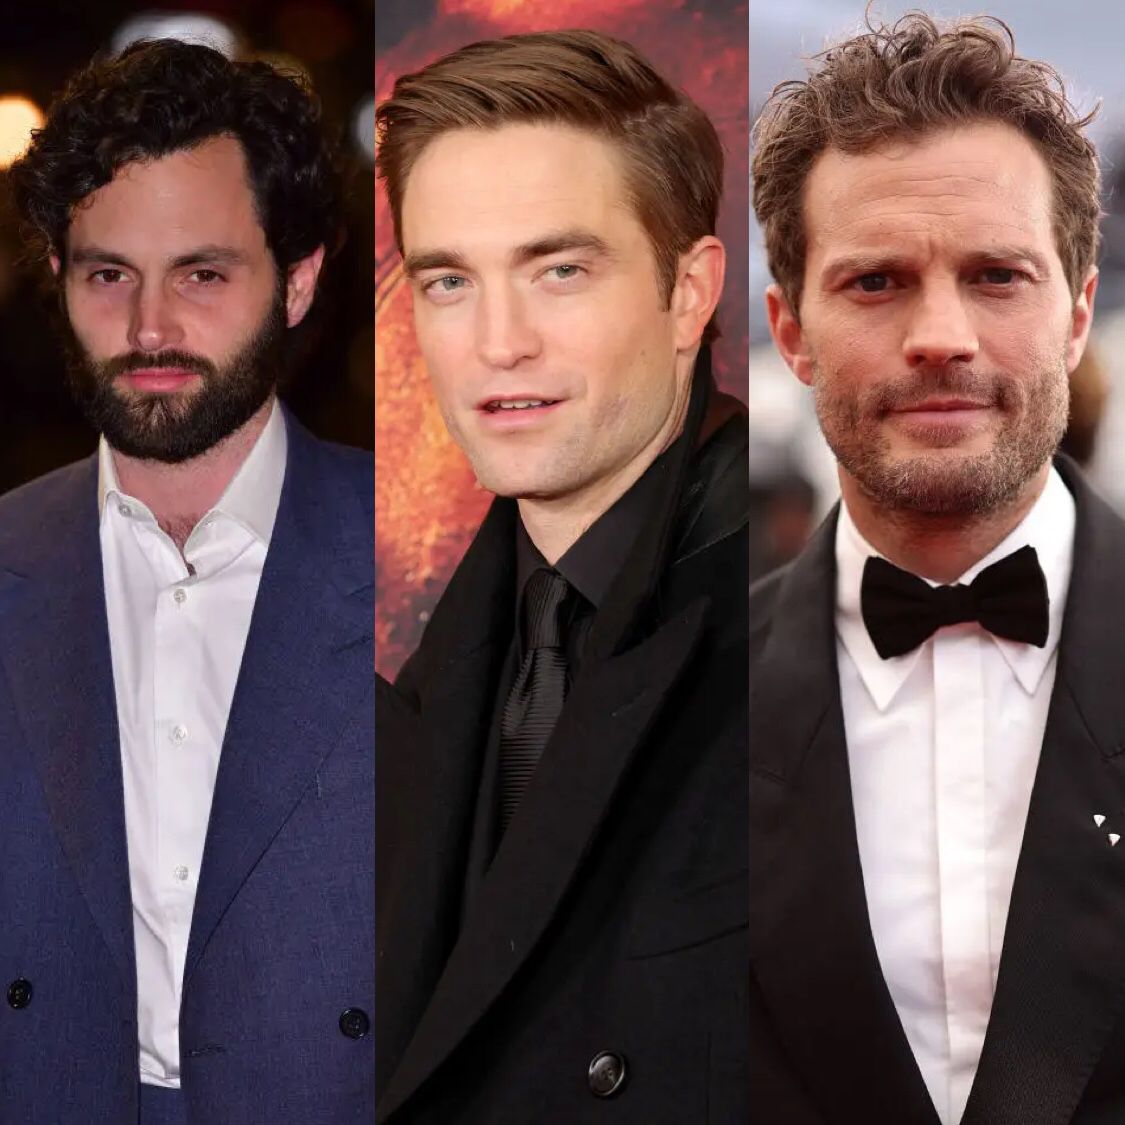 Këta aktorë janë penduar për personazhet ikonë që kanë luajtur në filma